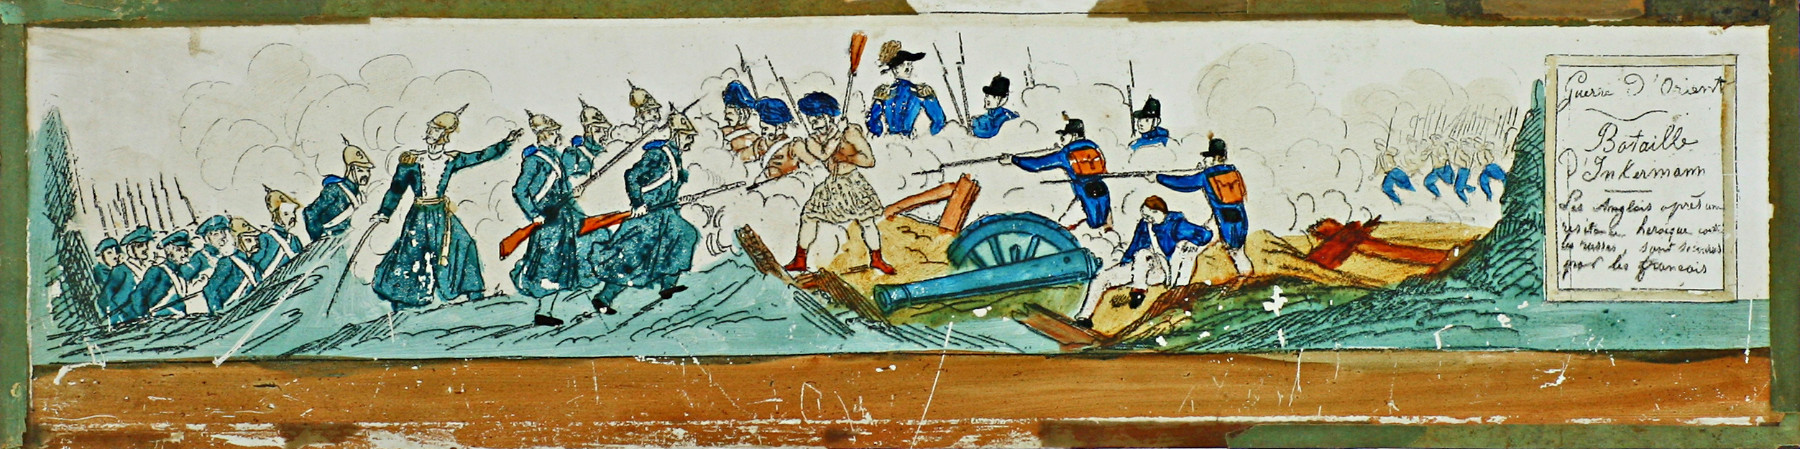 Bataille d'Inkermann -- Les Anglais après un resistance heroique contre les russes, sont [...] par les francais